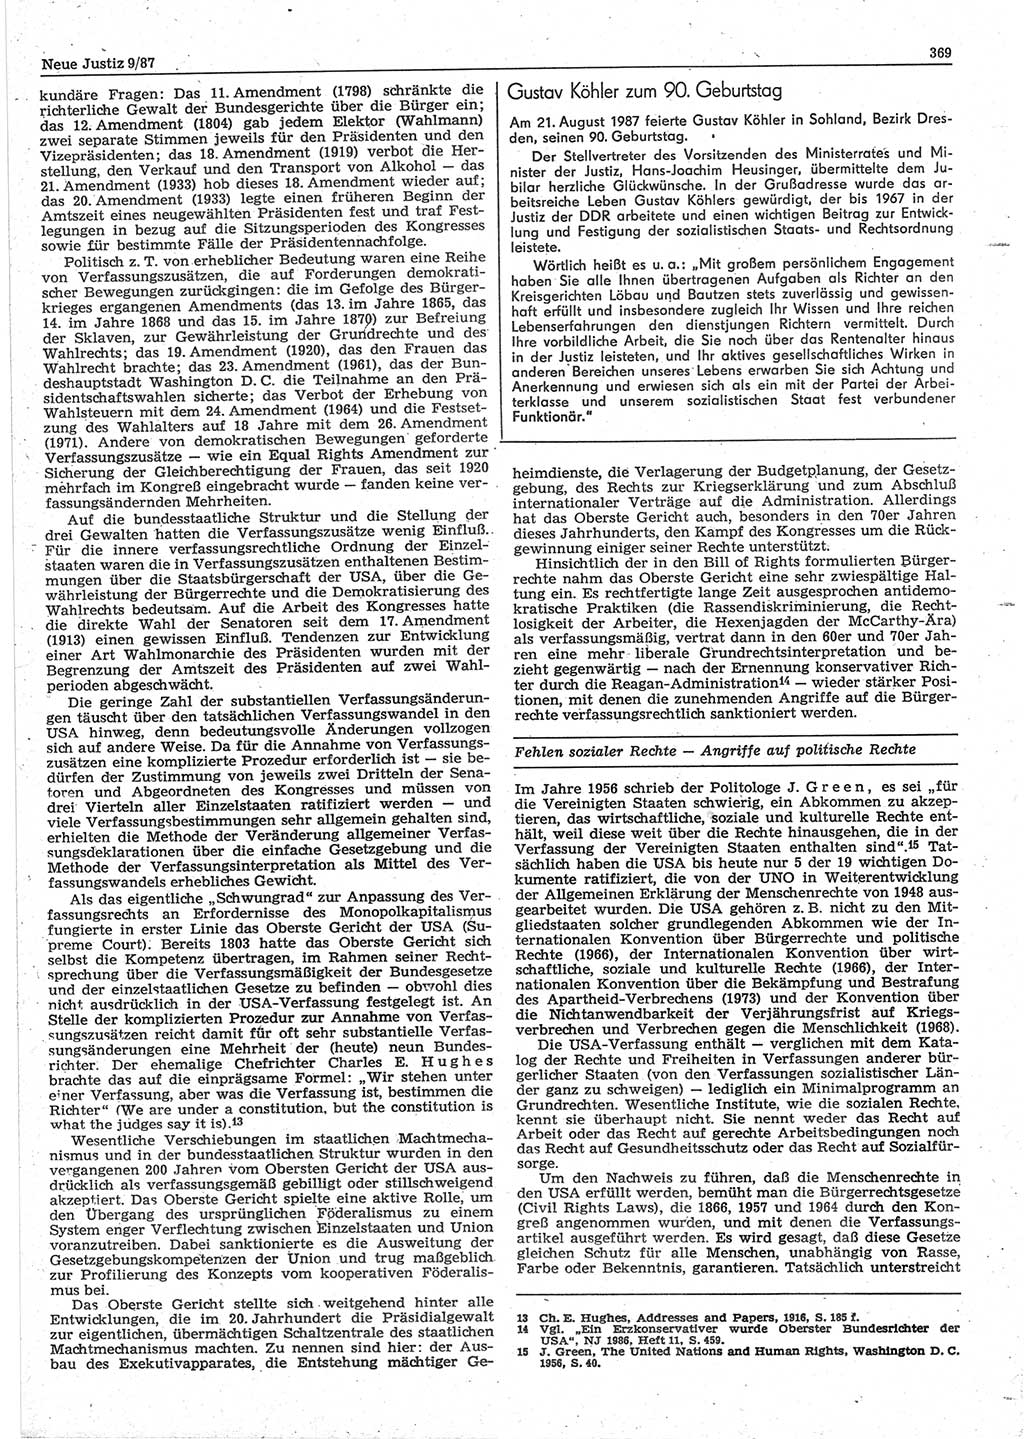 Neue Justiz (NJ), Zeitschrift für sozialistisches Recht und Gesetzlichkeit [Deutsche Demokratische Republik (DDR)], 41. Jahrgang 1987, Seite 369 (NJ DDR 1987, S. 369)